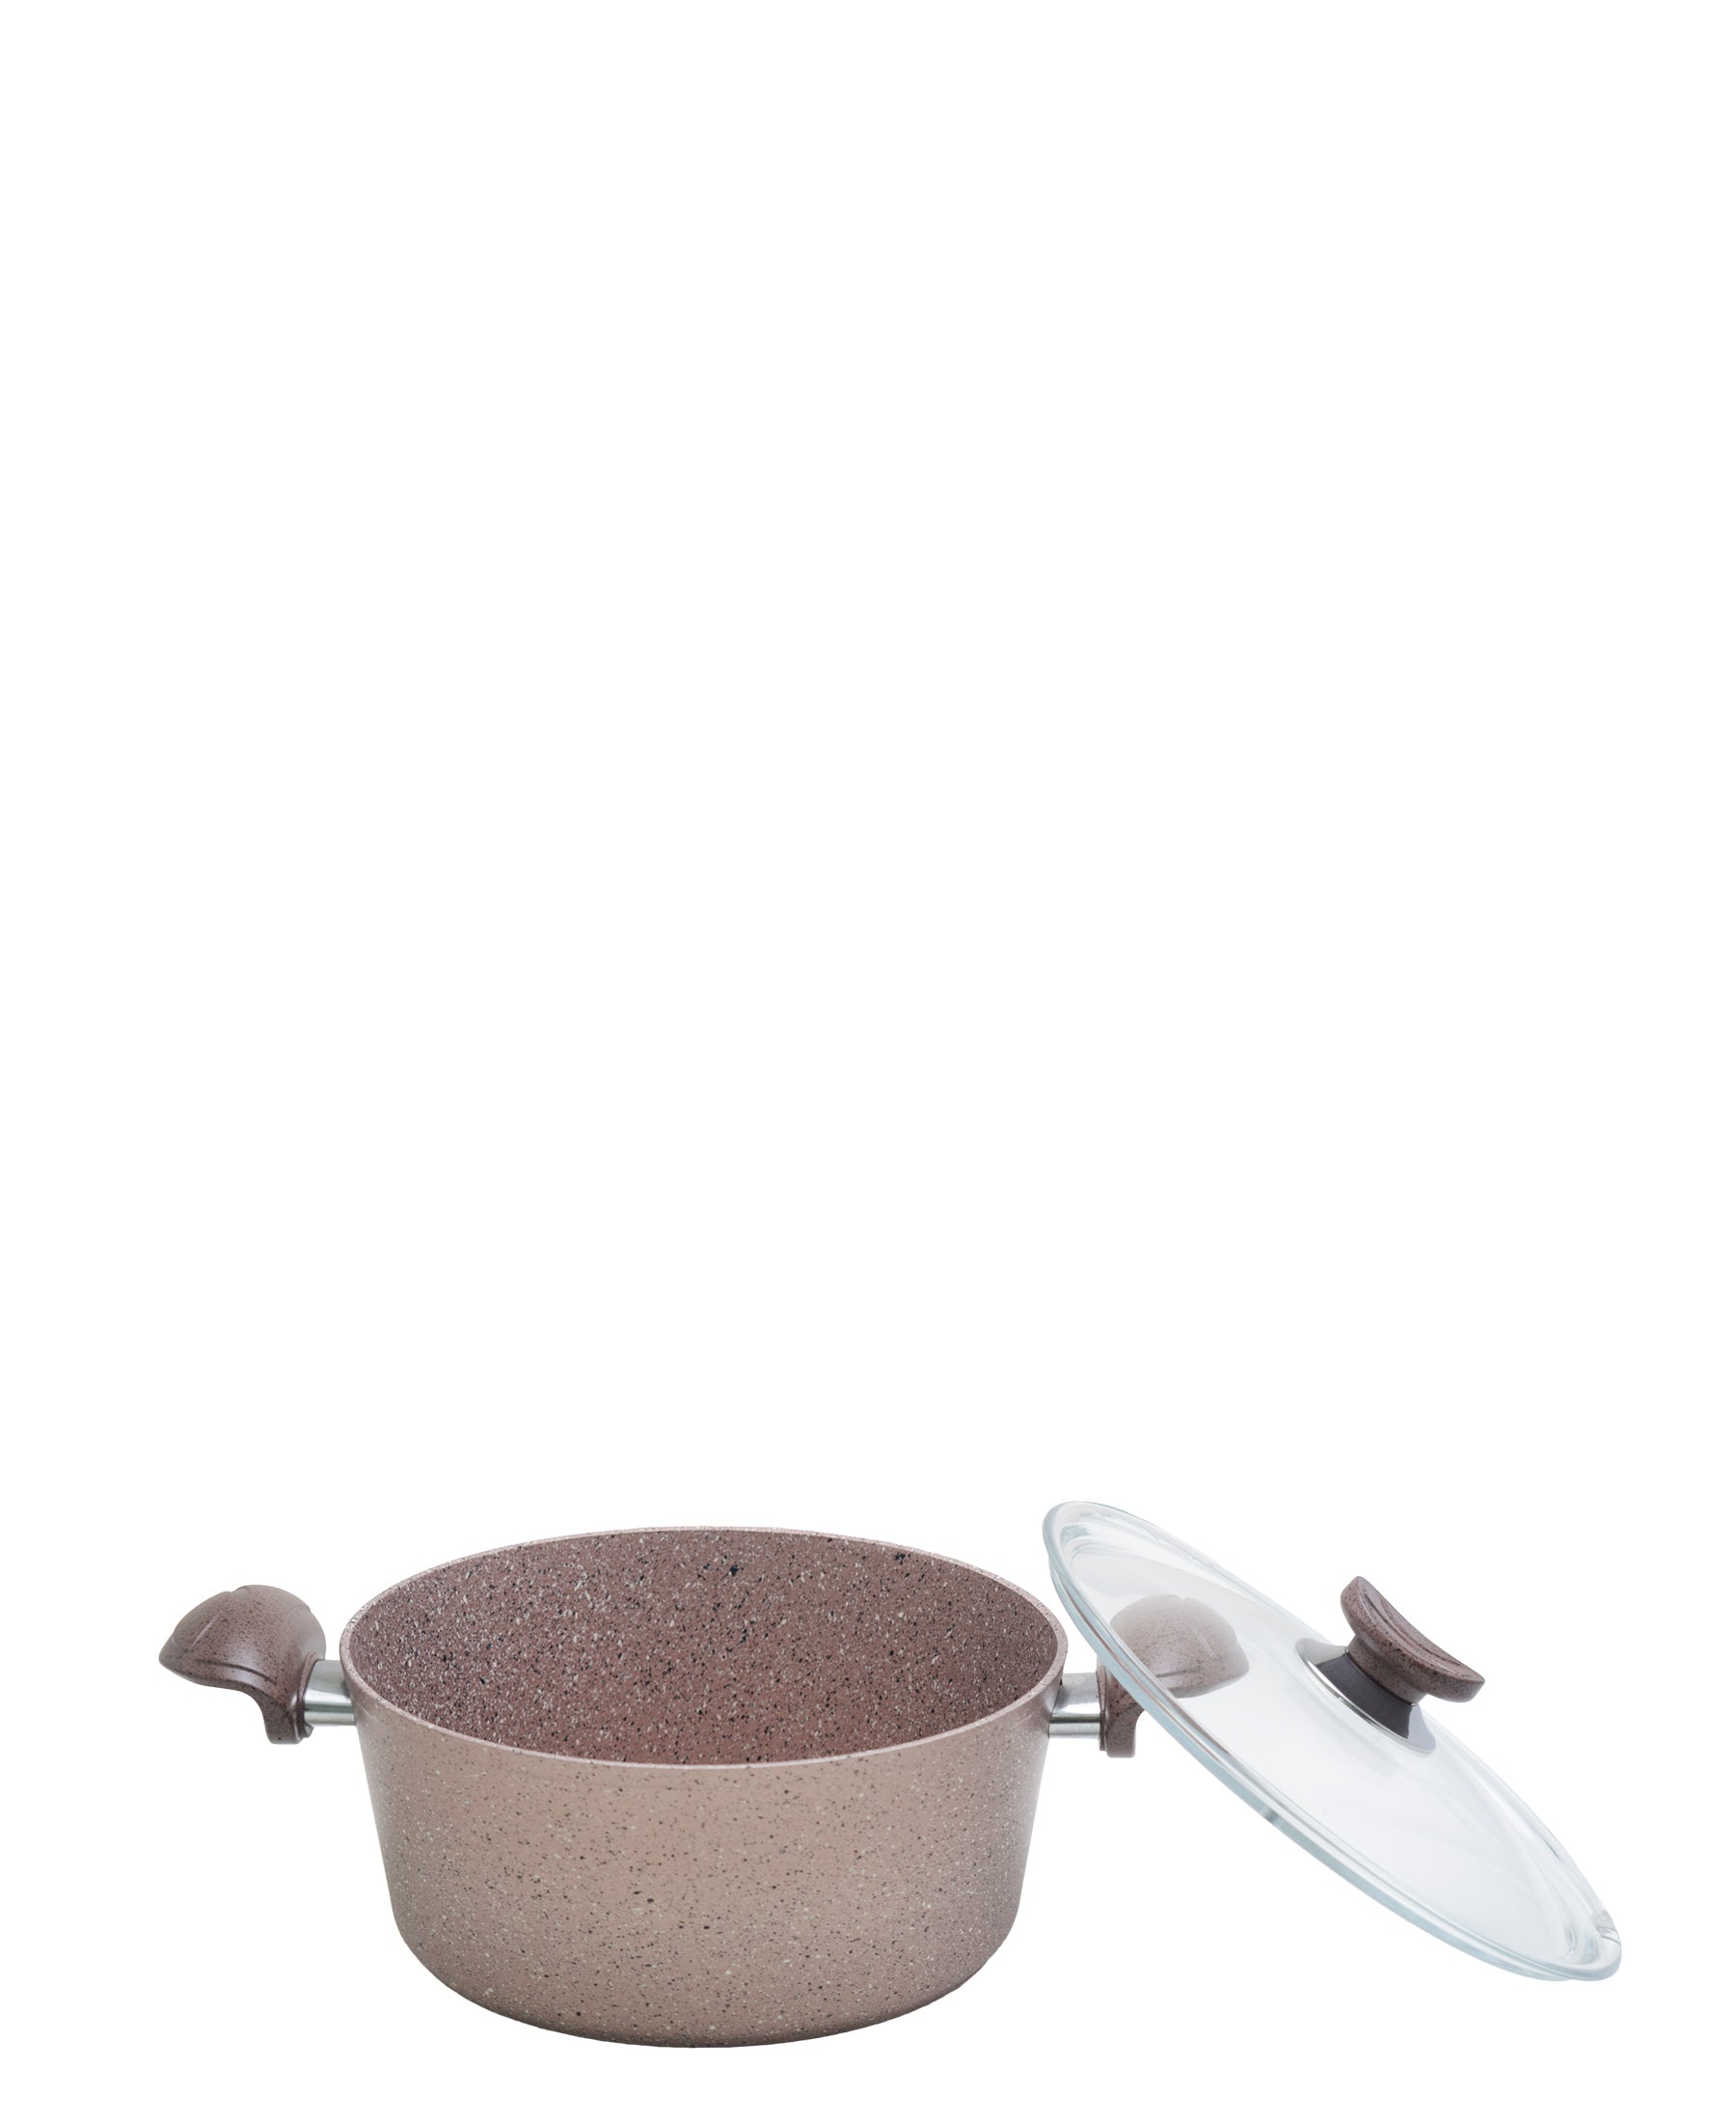 OMS 7 Piece Granite Cookware Pot Set - Beige